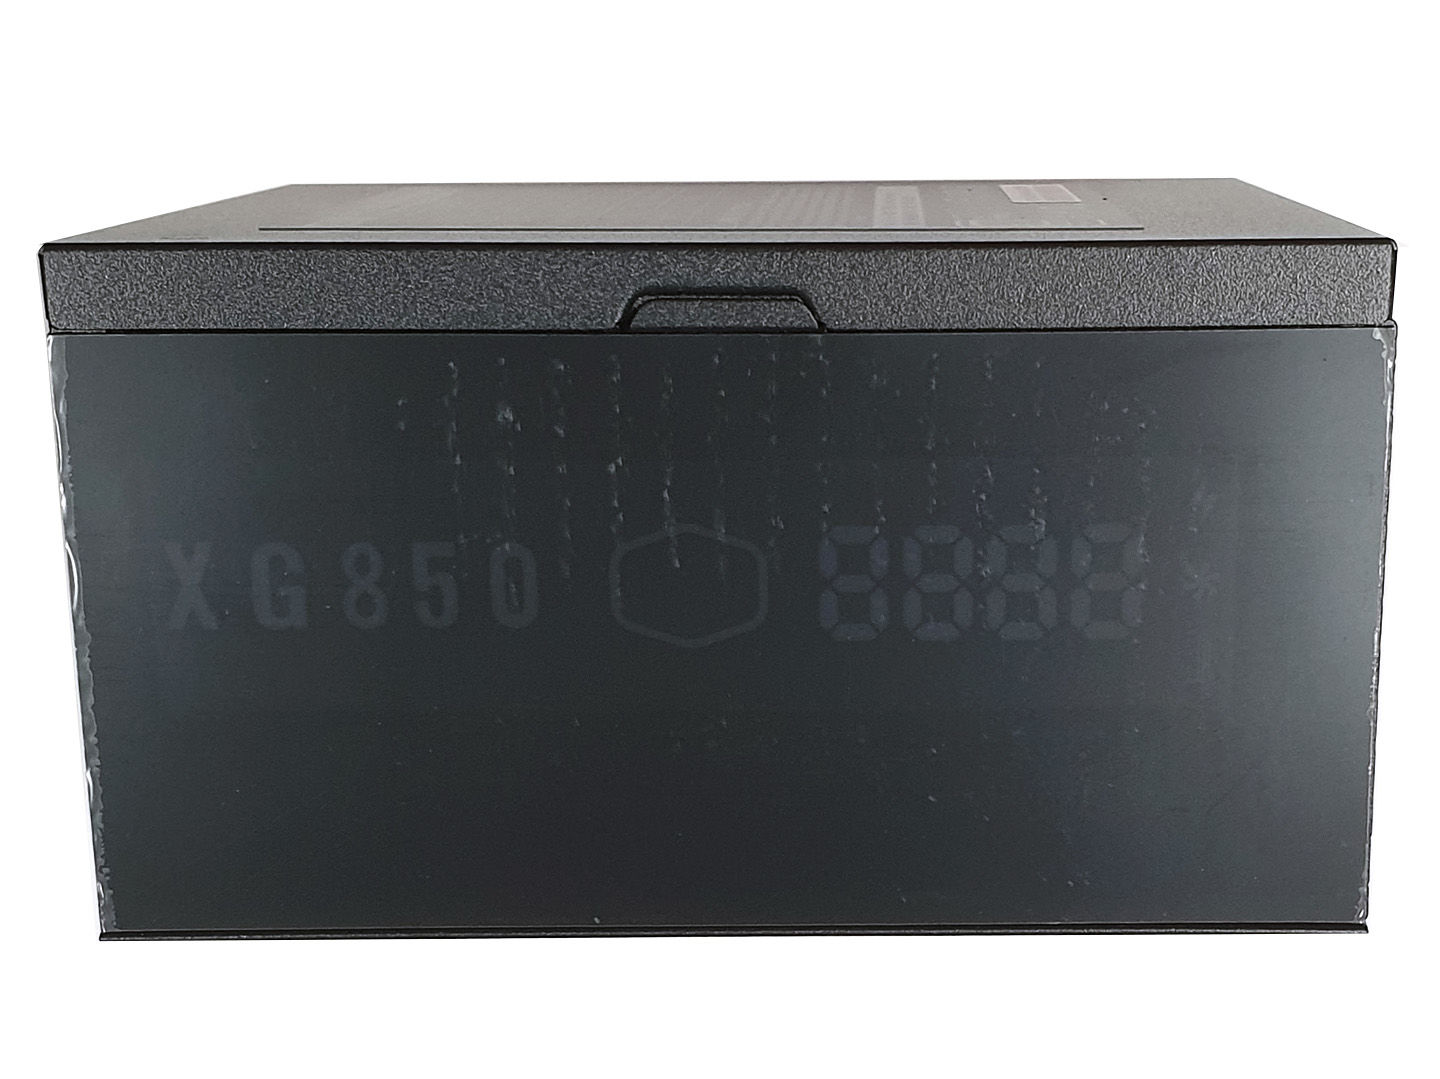 Обзор Cooler Master XG850 80 Plus Platinum